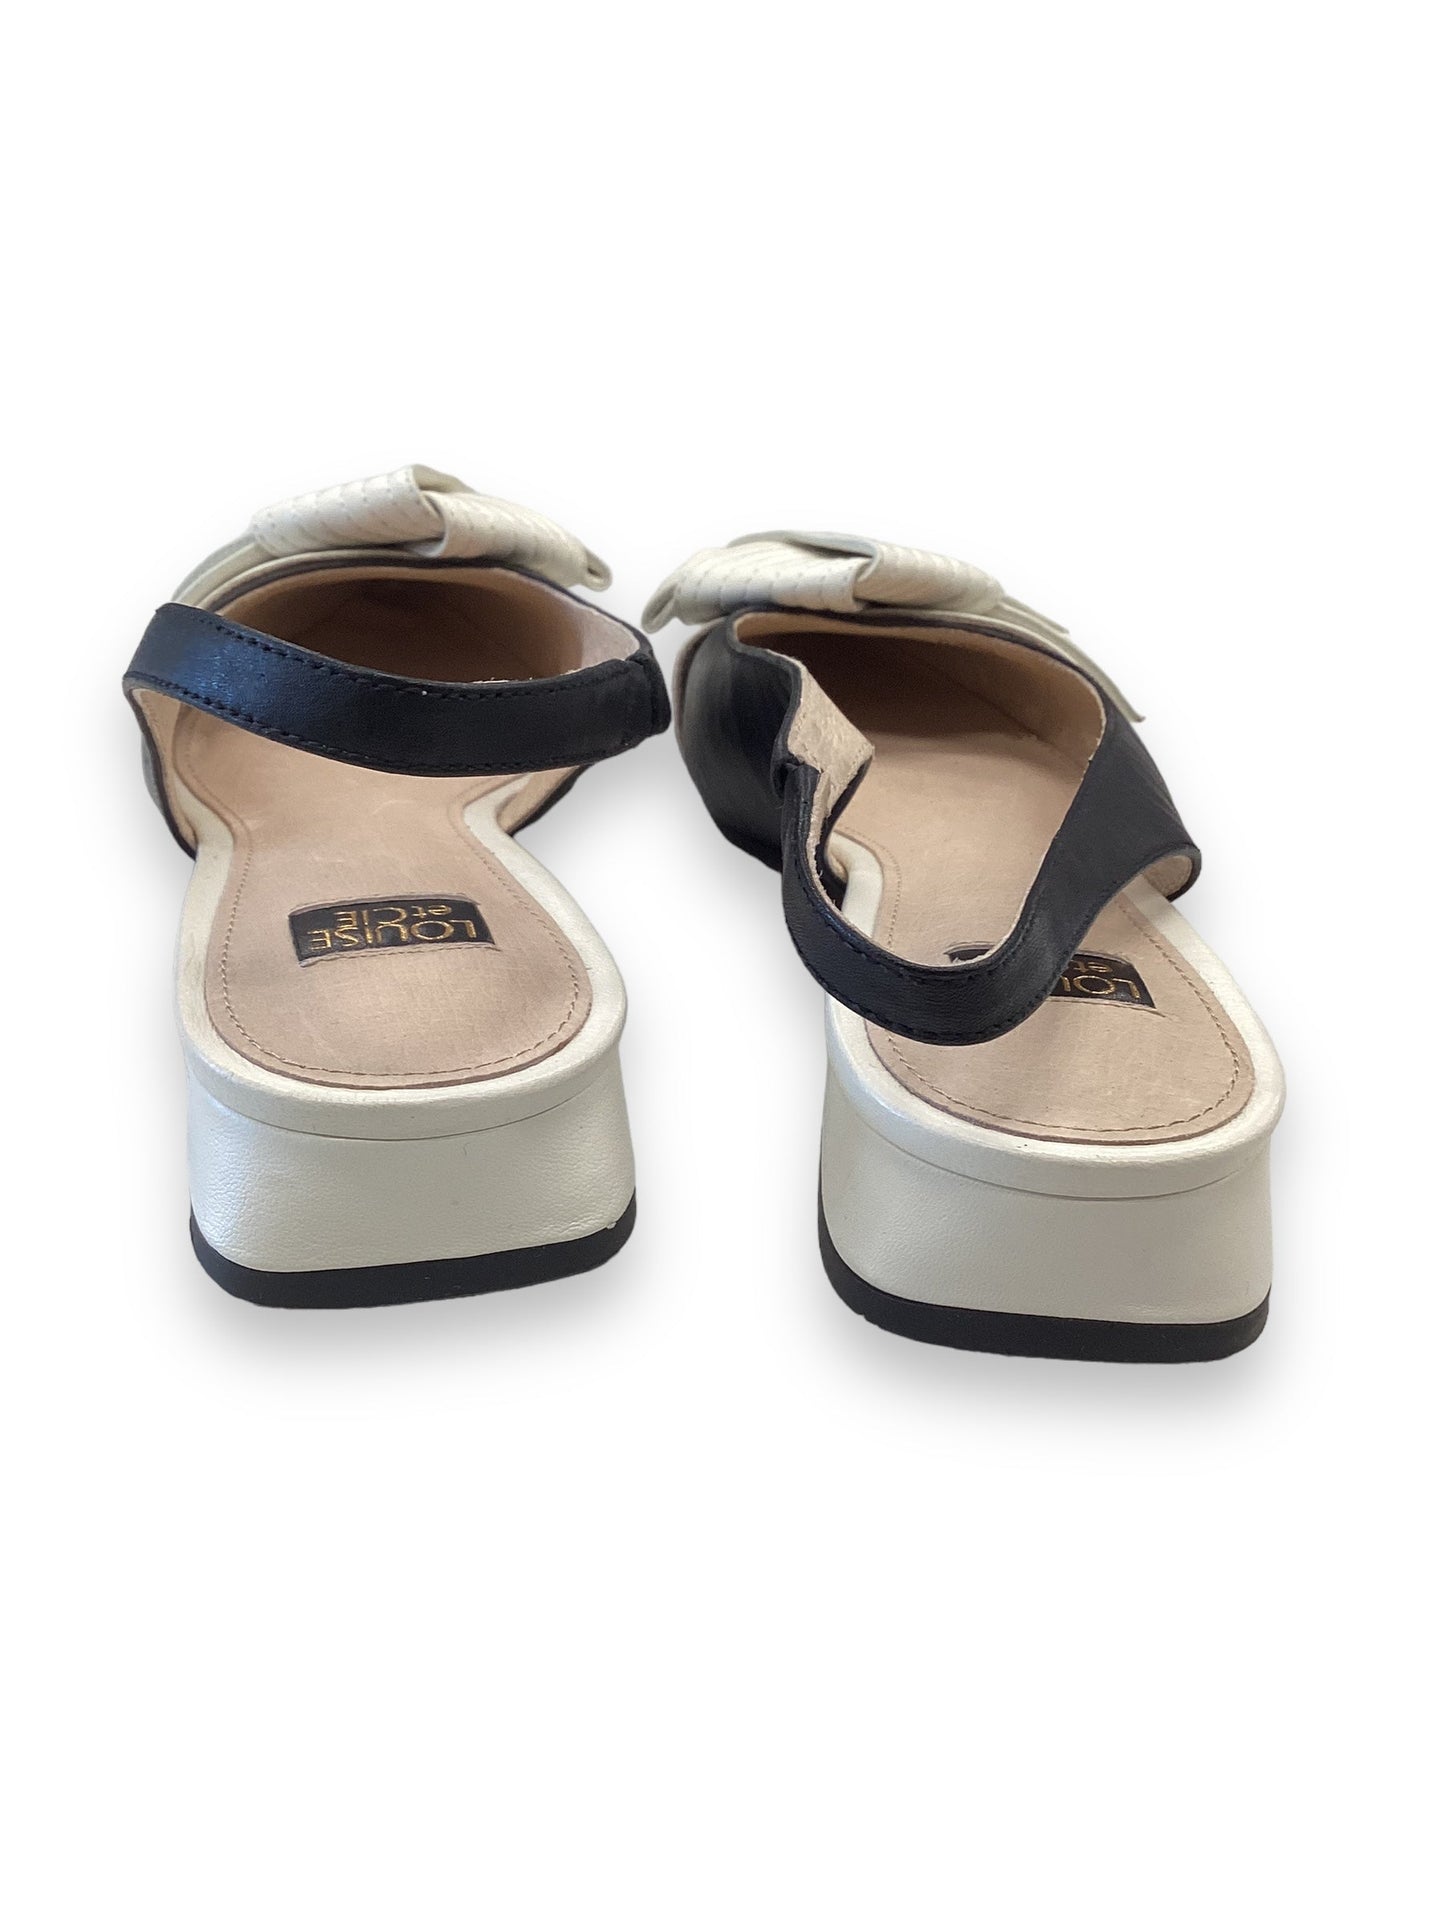 Black & White Shoes Flats Louise Et Cie, Size 7